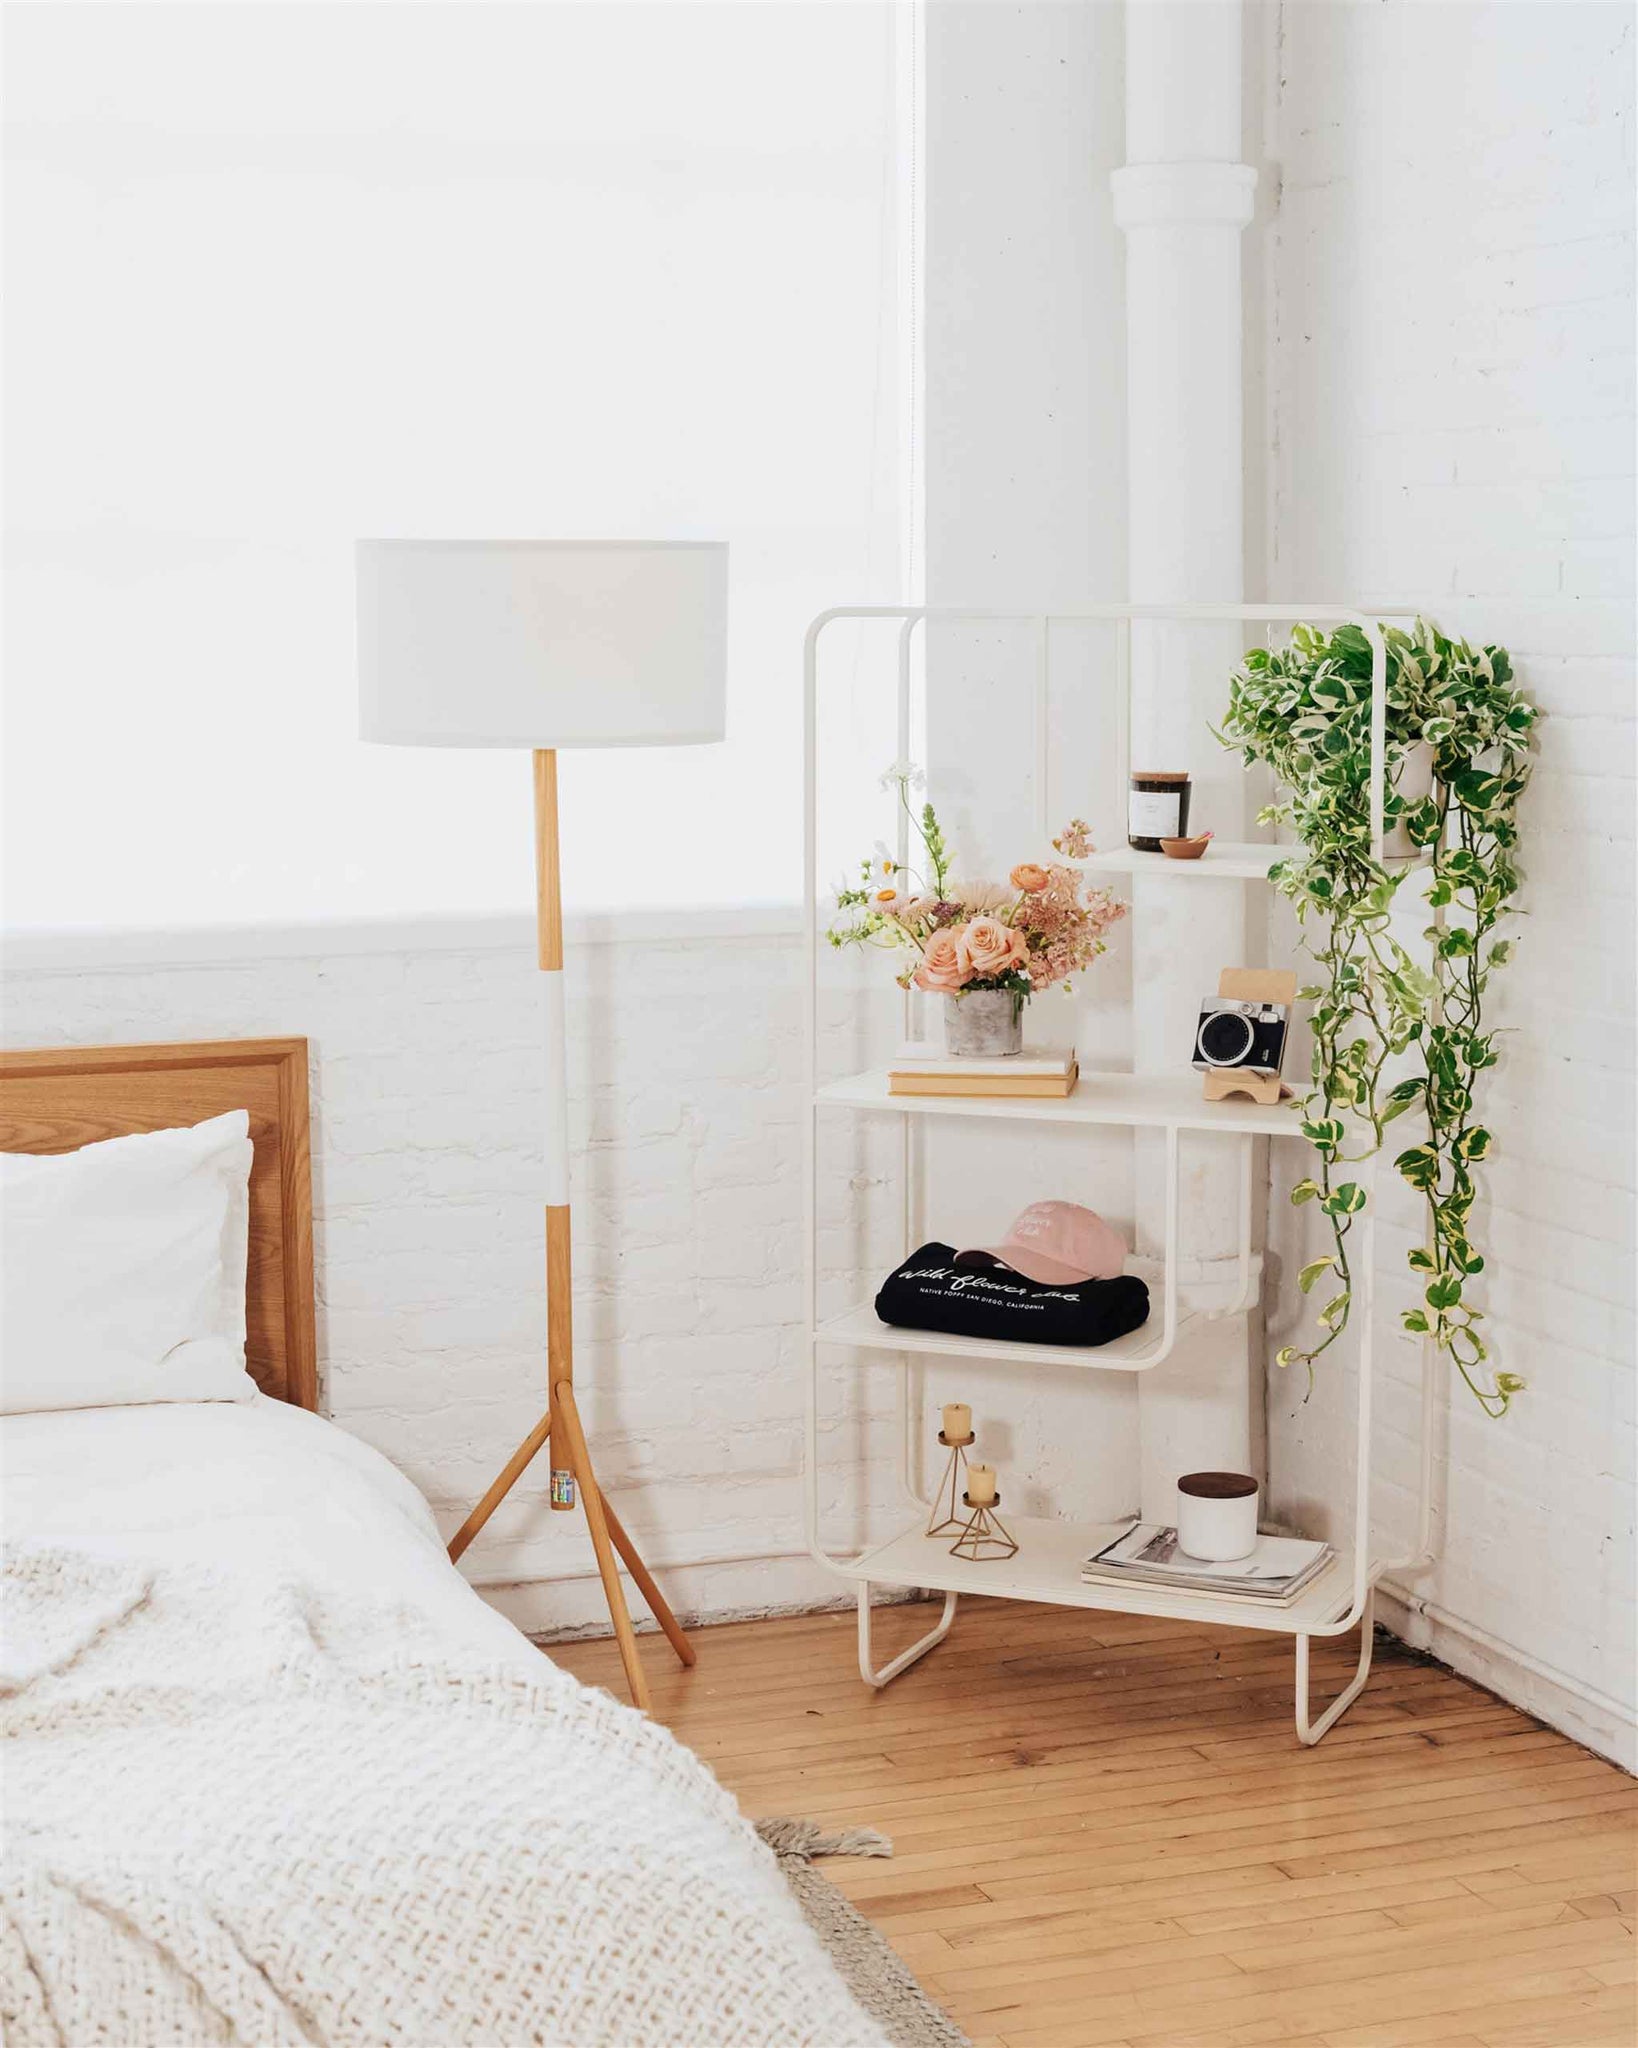 Flower arrangement on a shelf in a bedroom